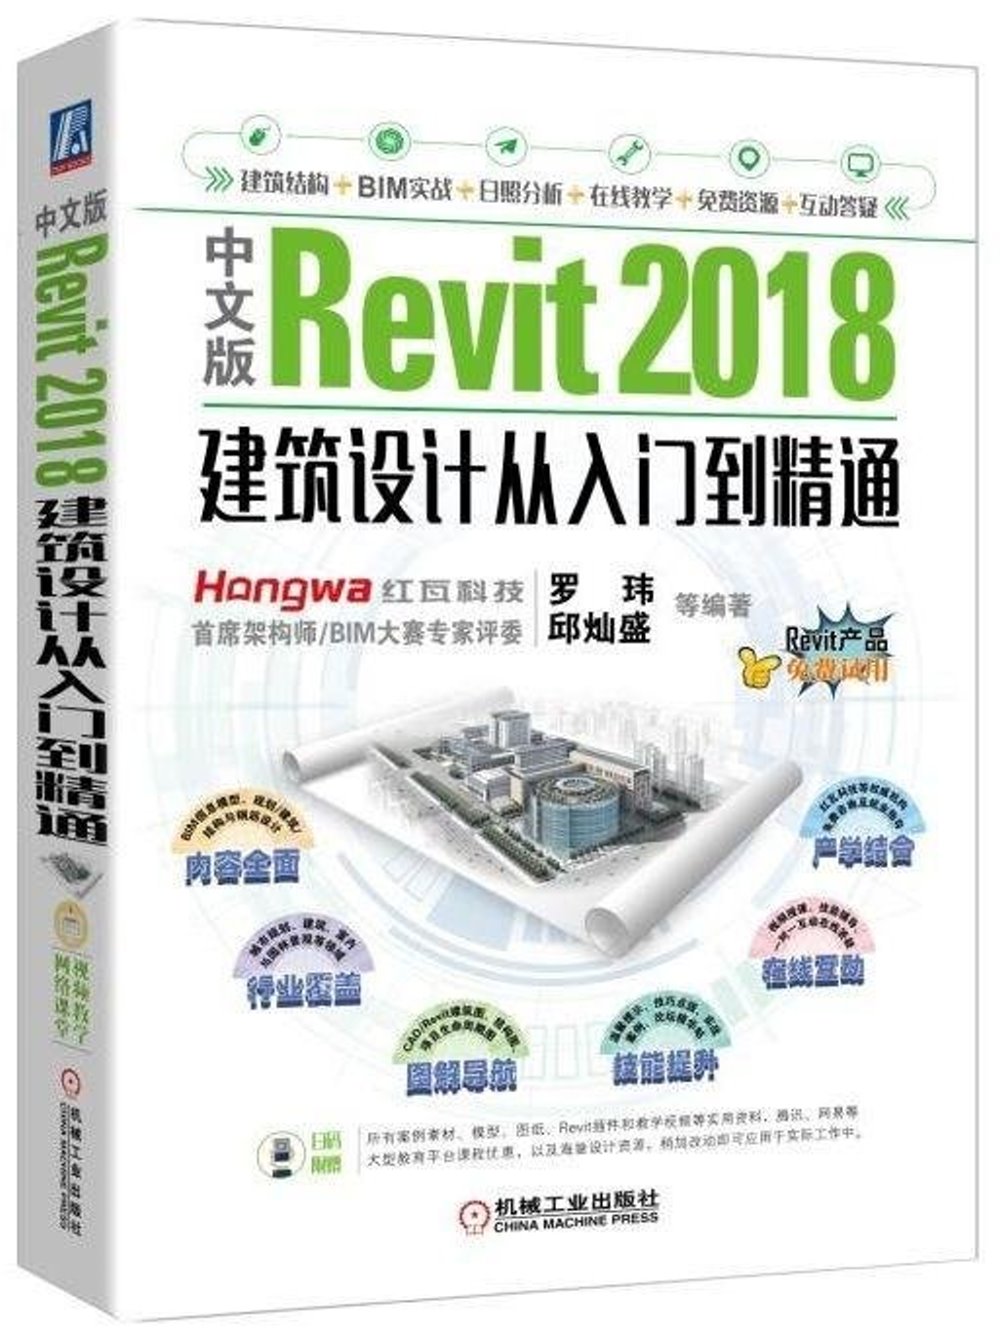 中文版Revit 2018建築設計從入門到精通